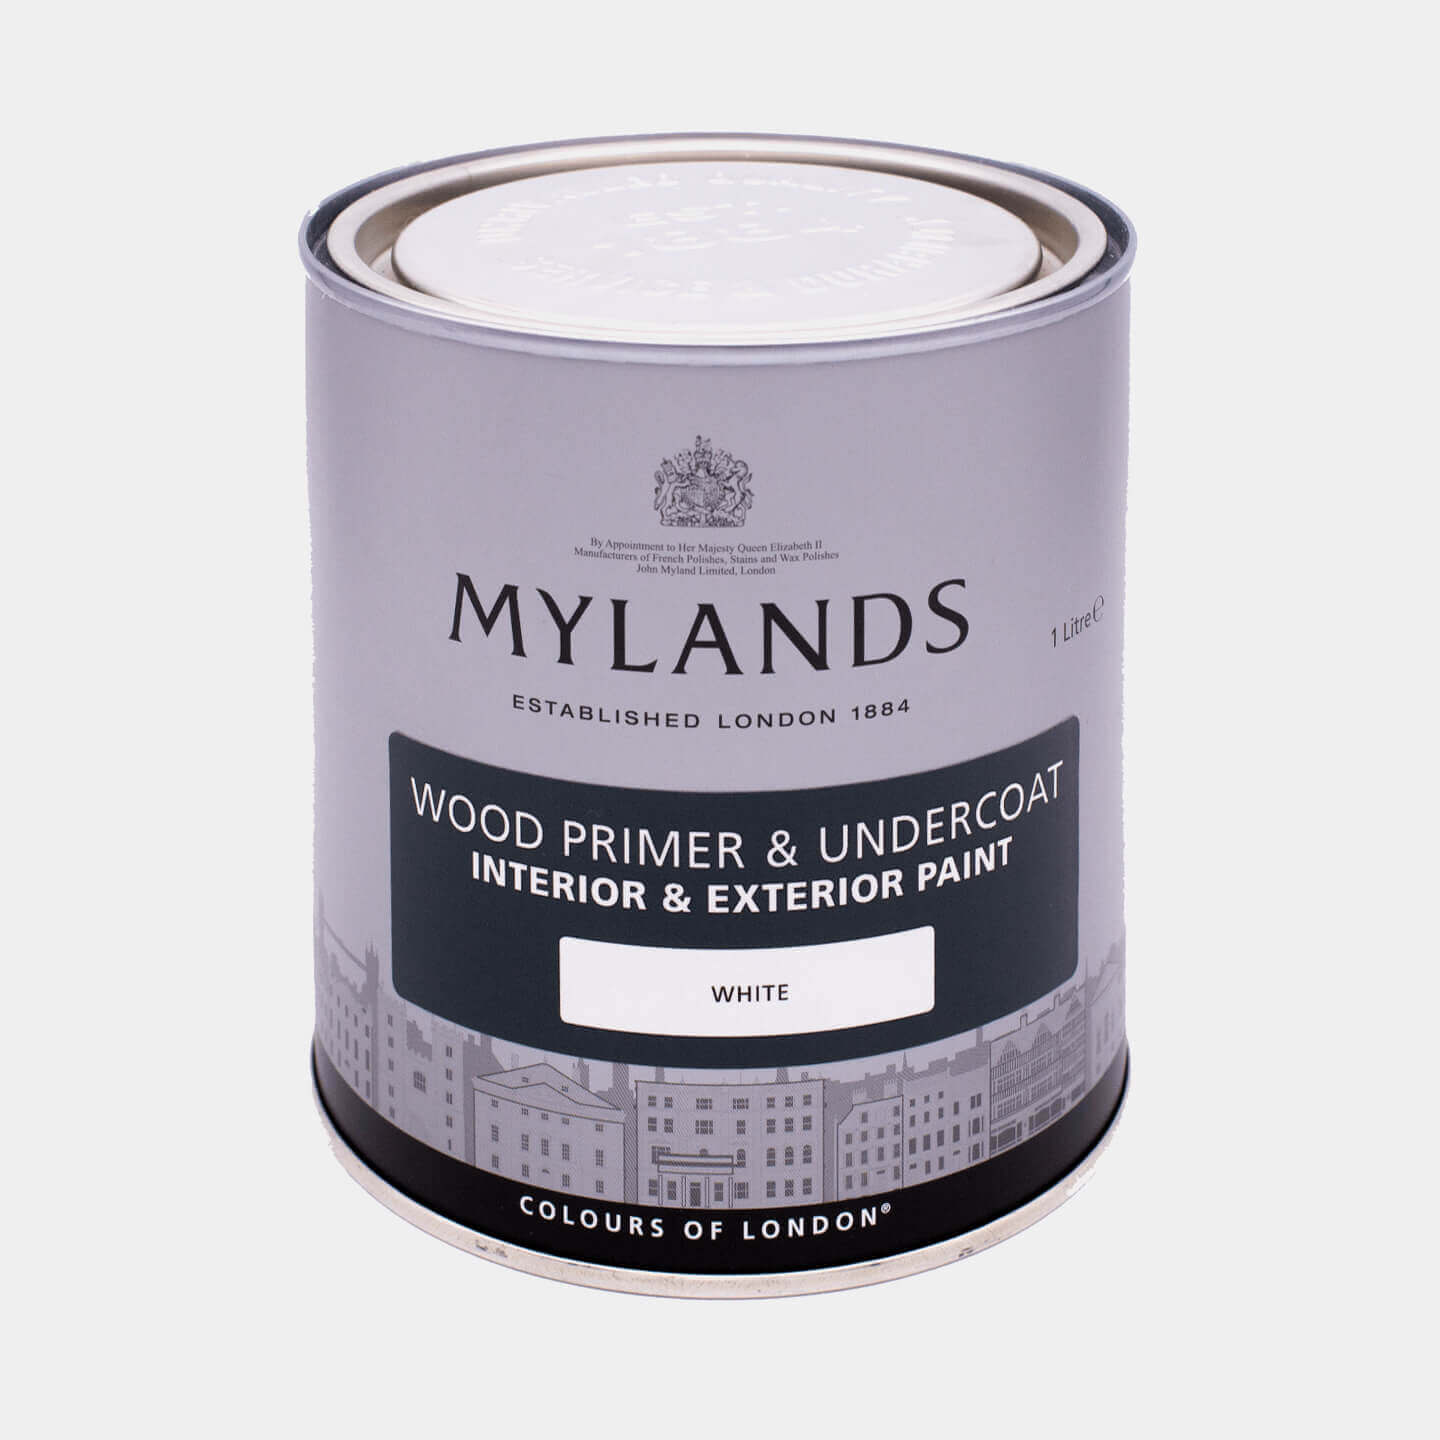 Mylands Wood Primer & Undercoat - White, 2.5L